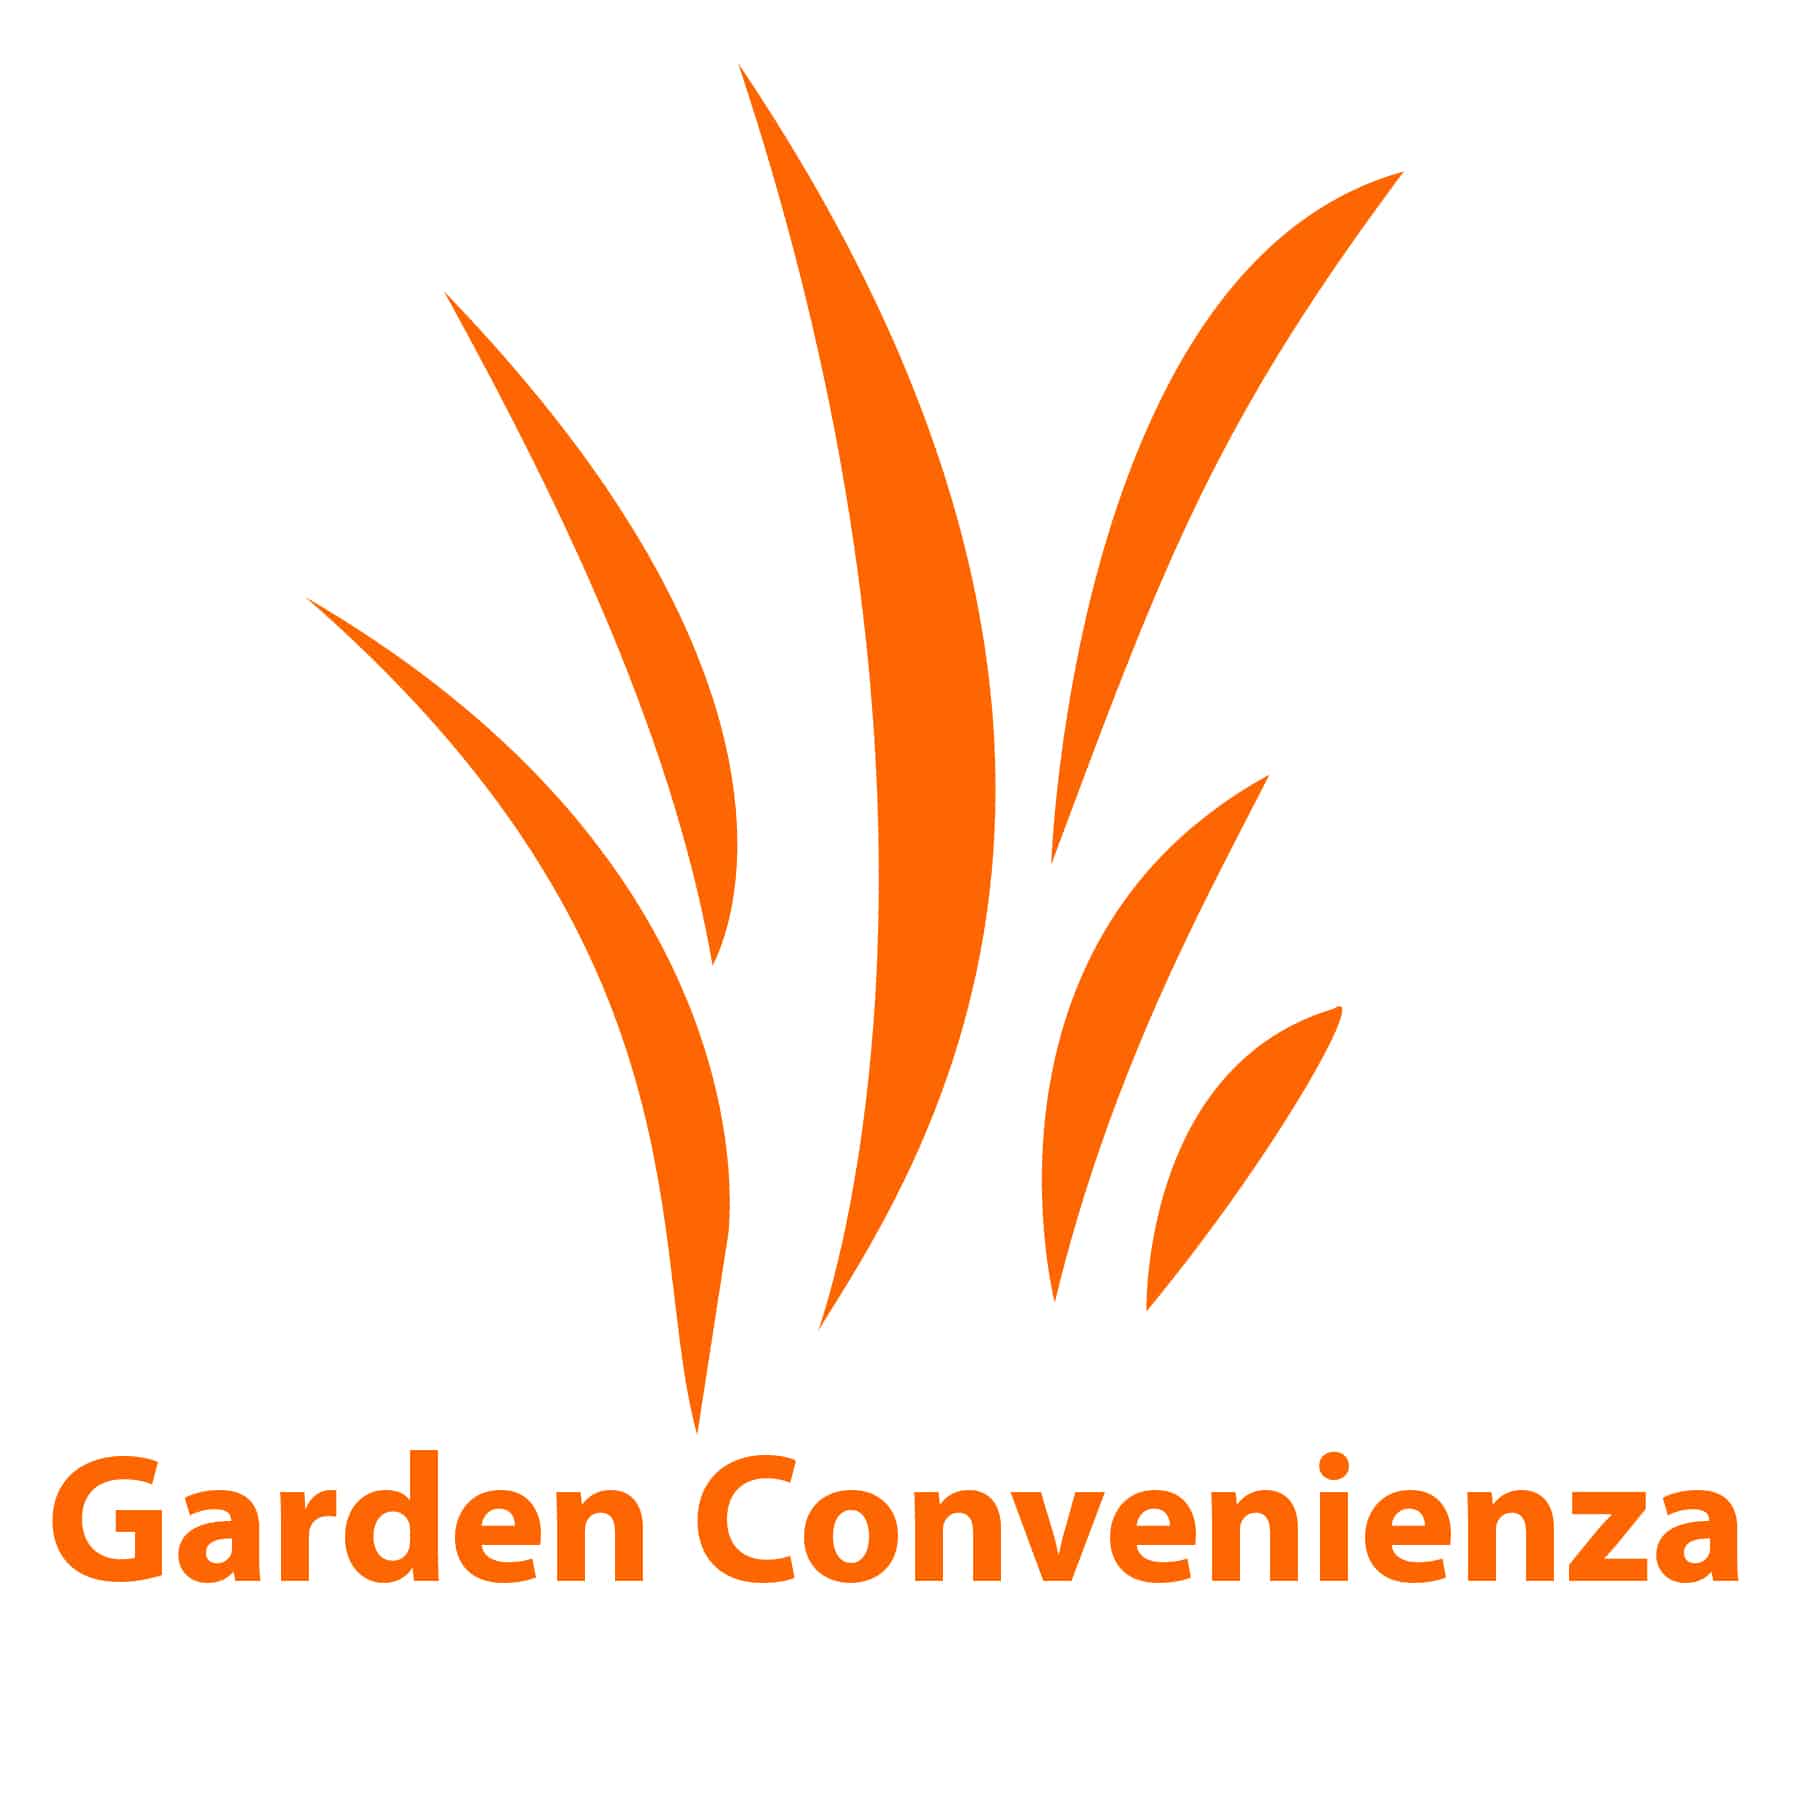 Arredare il giardino con garden Convenienza